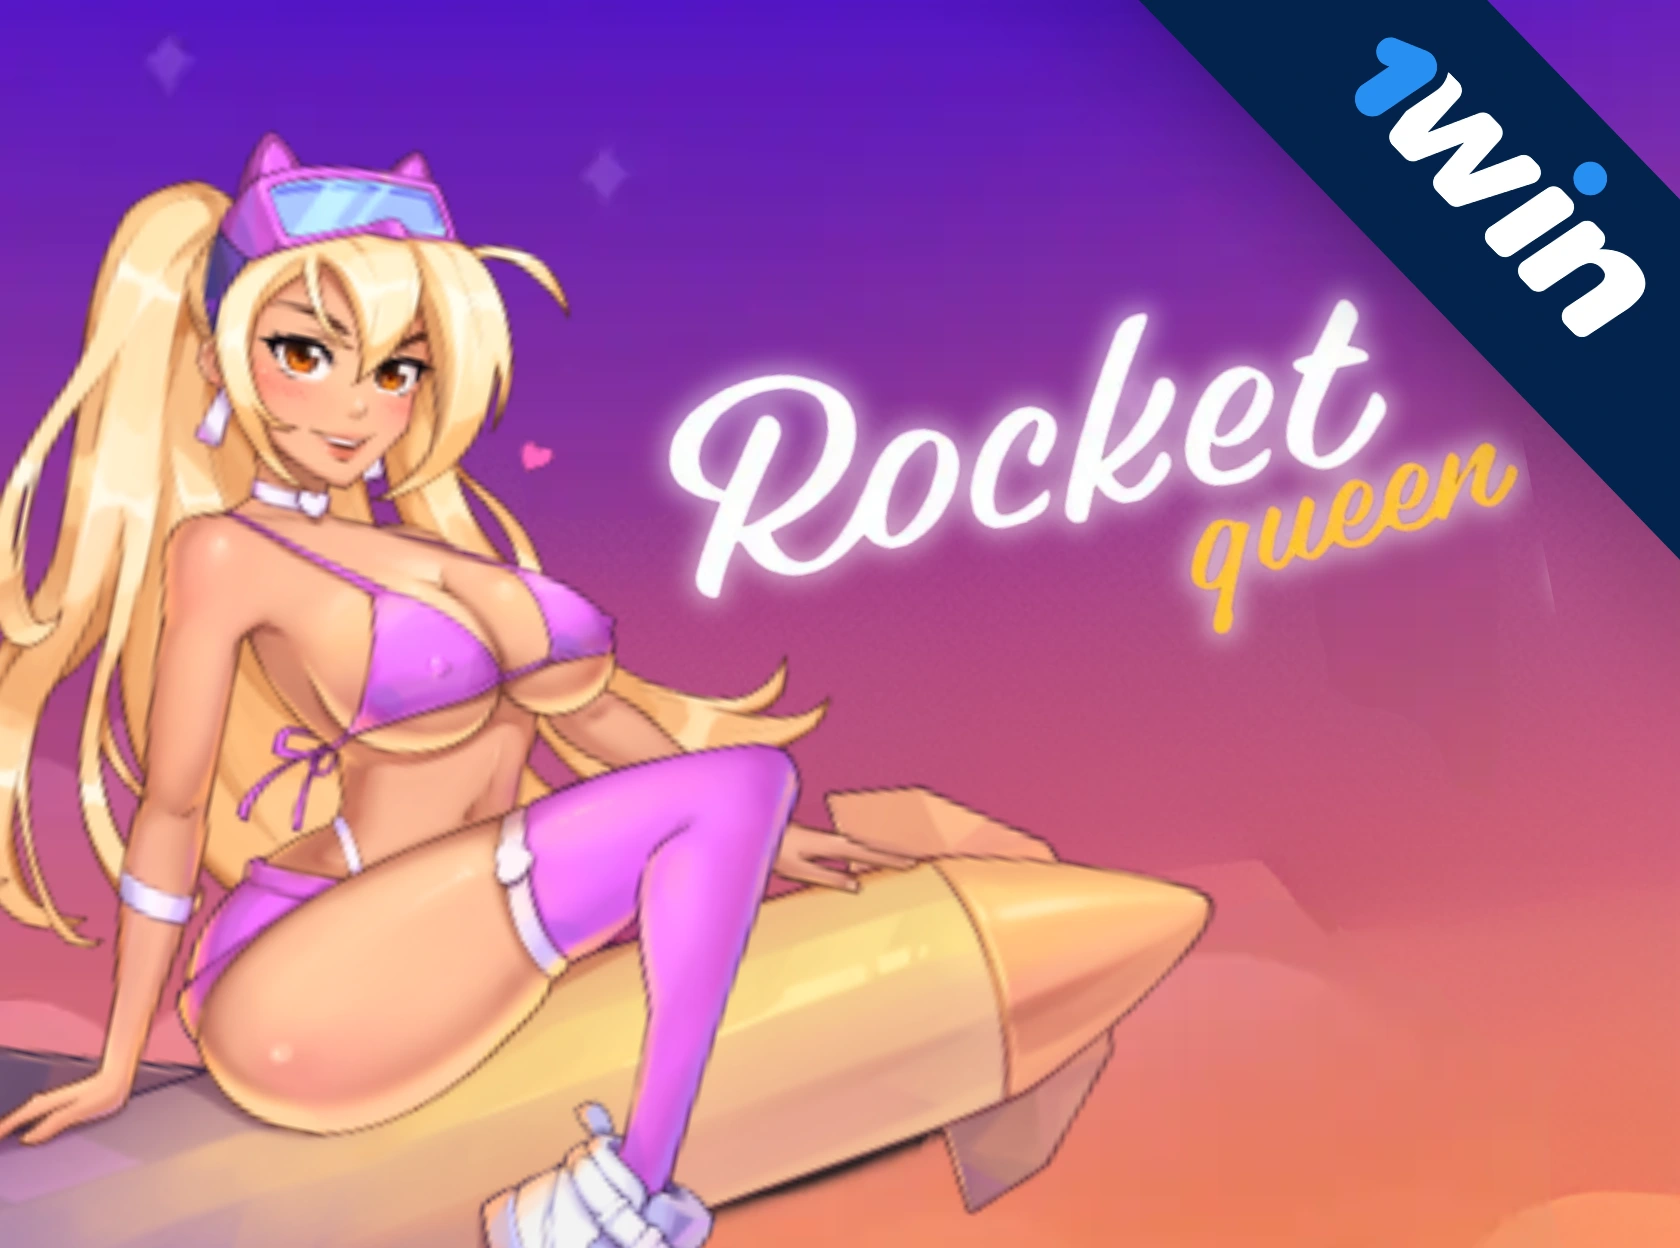 Rocket Queen 1win - पैसे के लिए खेल ऑनलाइन खेलना